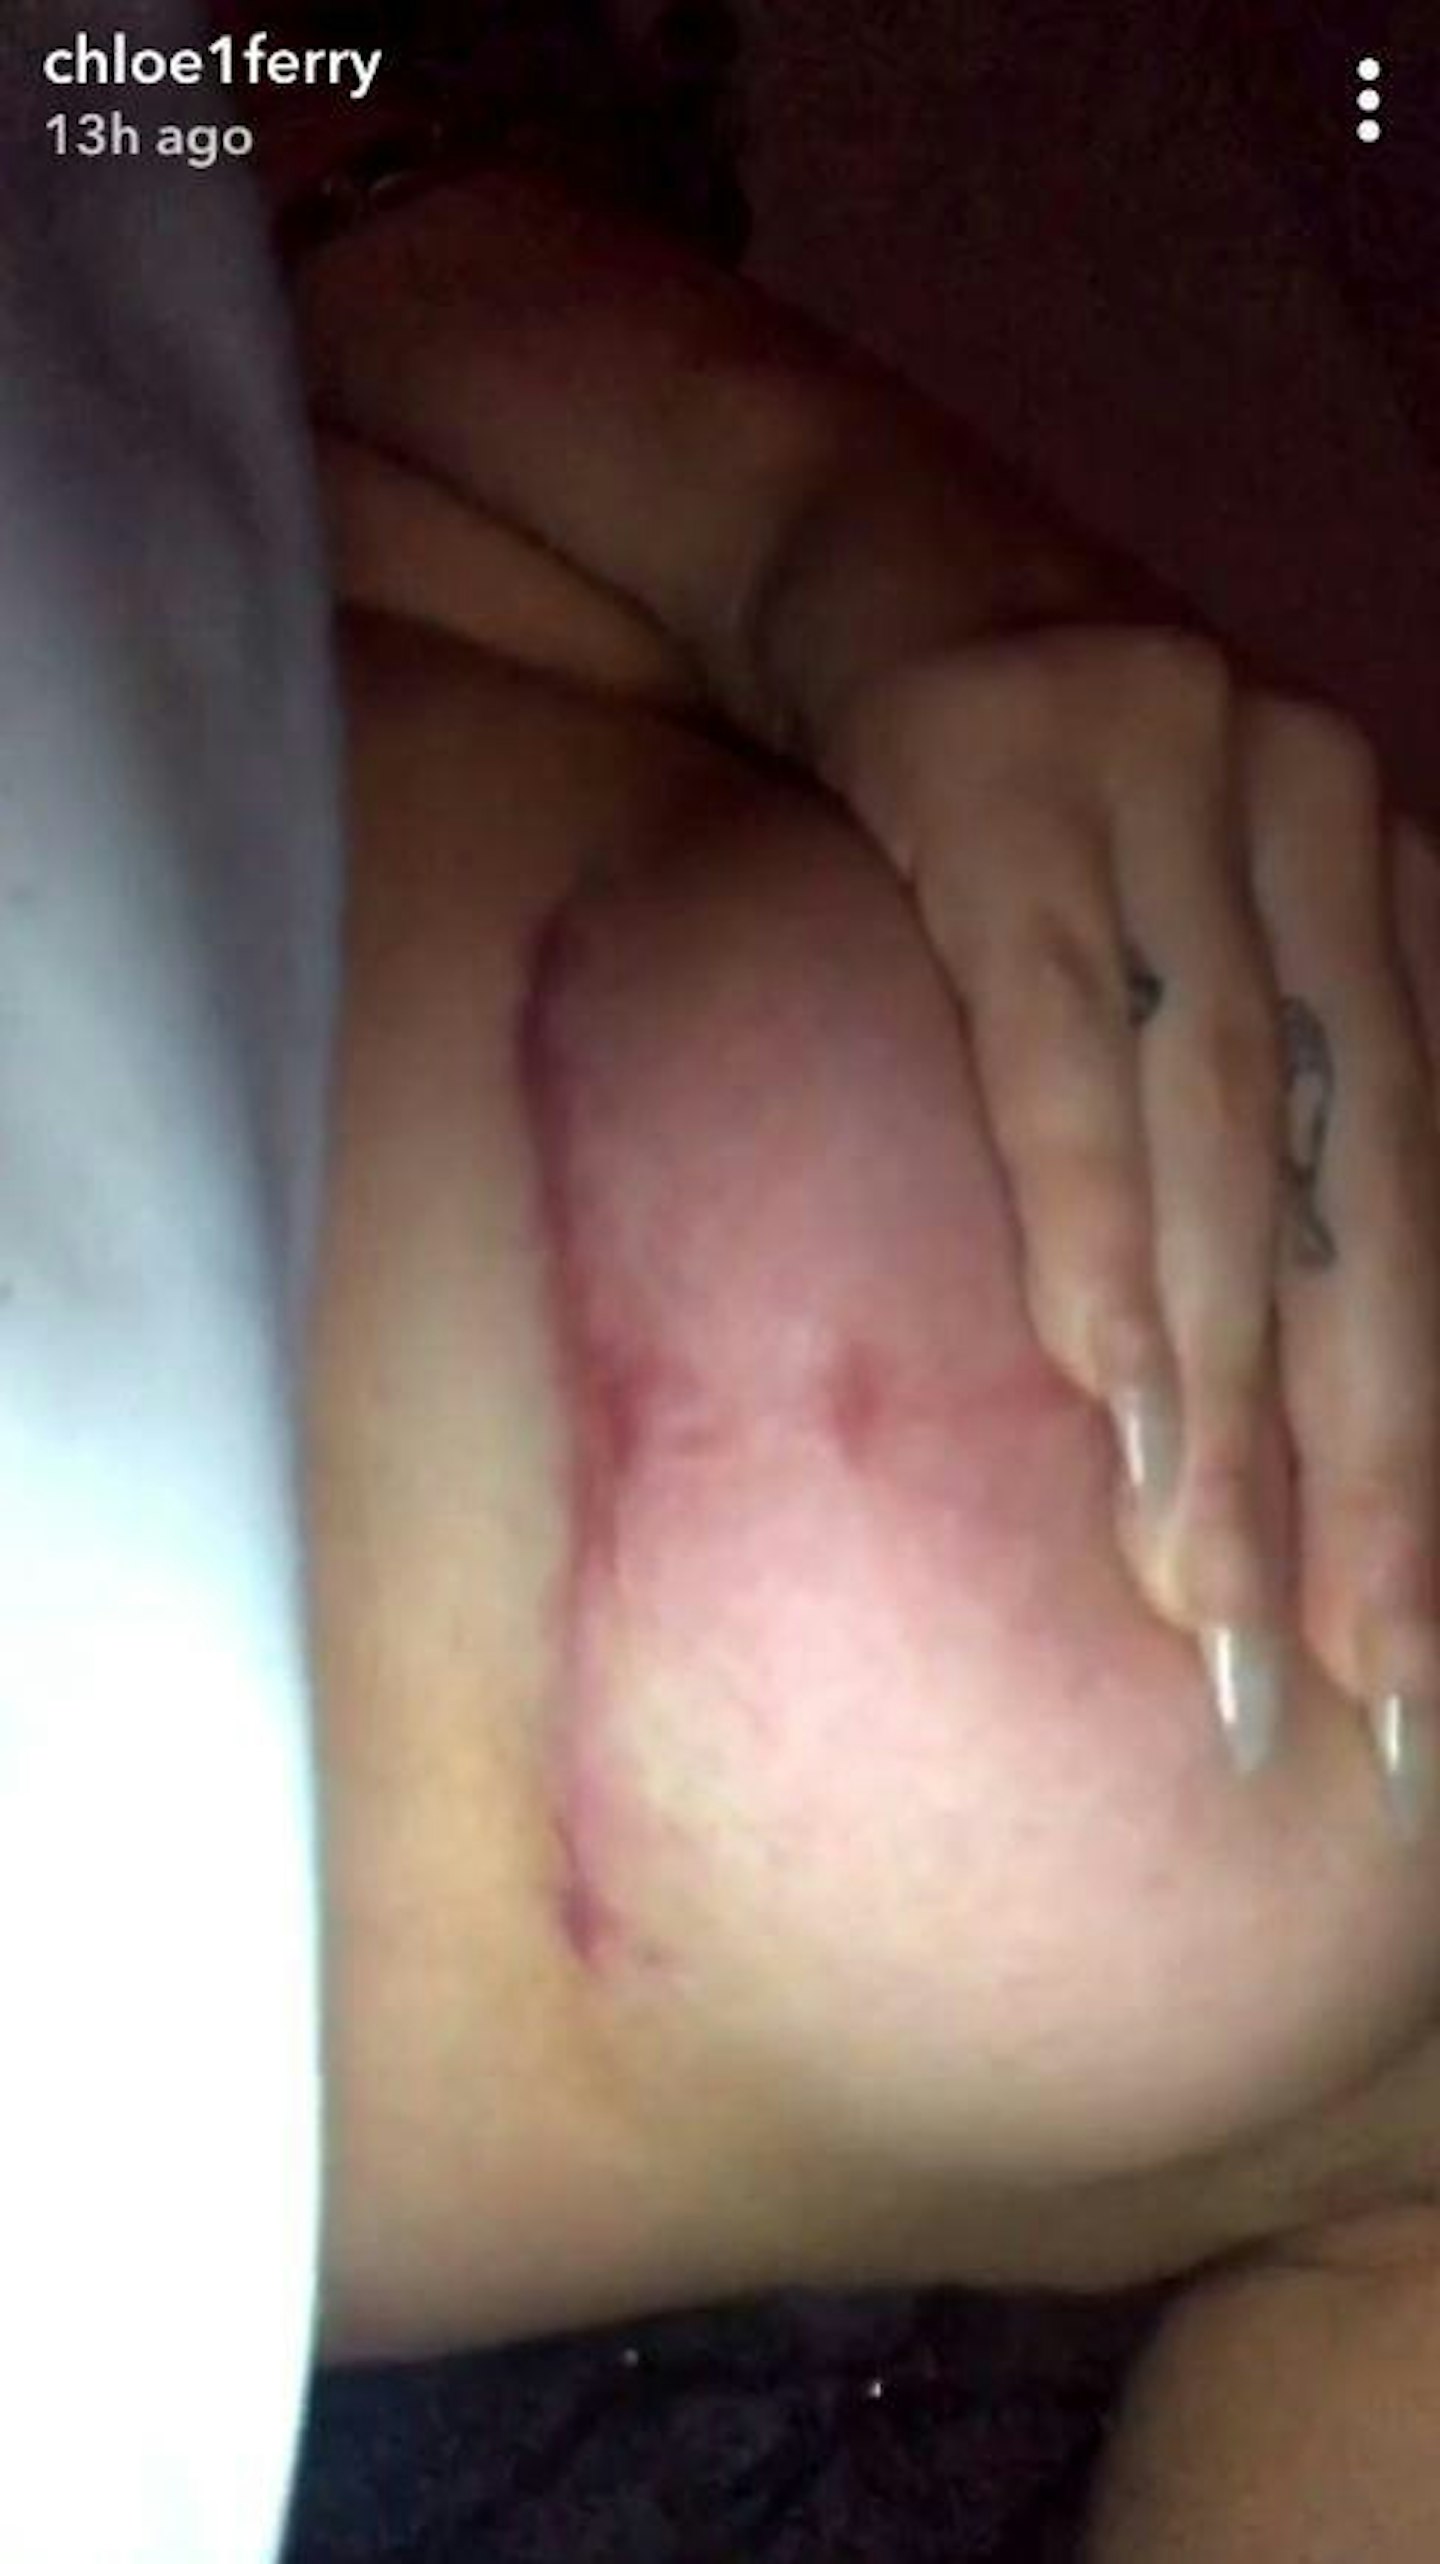 Chloe Ferry boob surgery scar